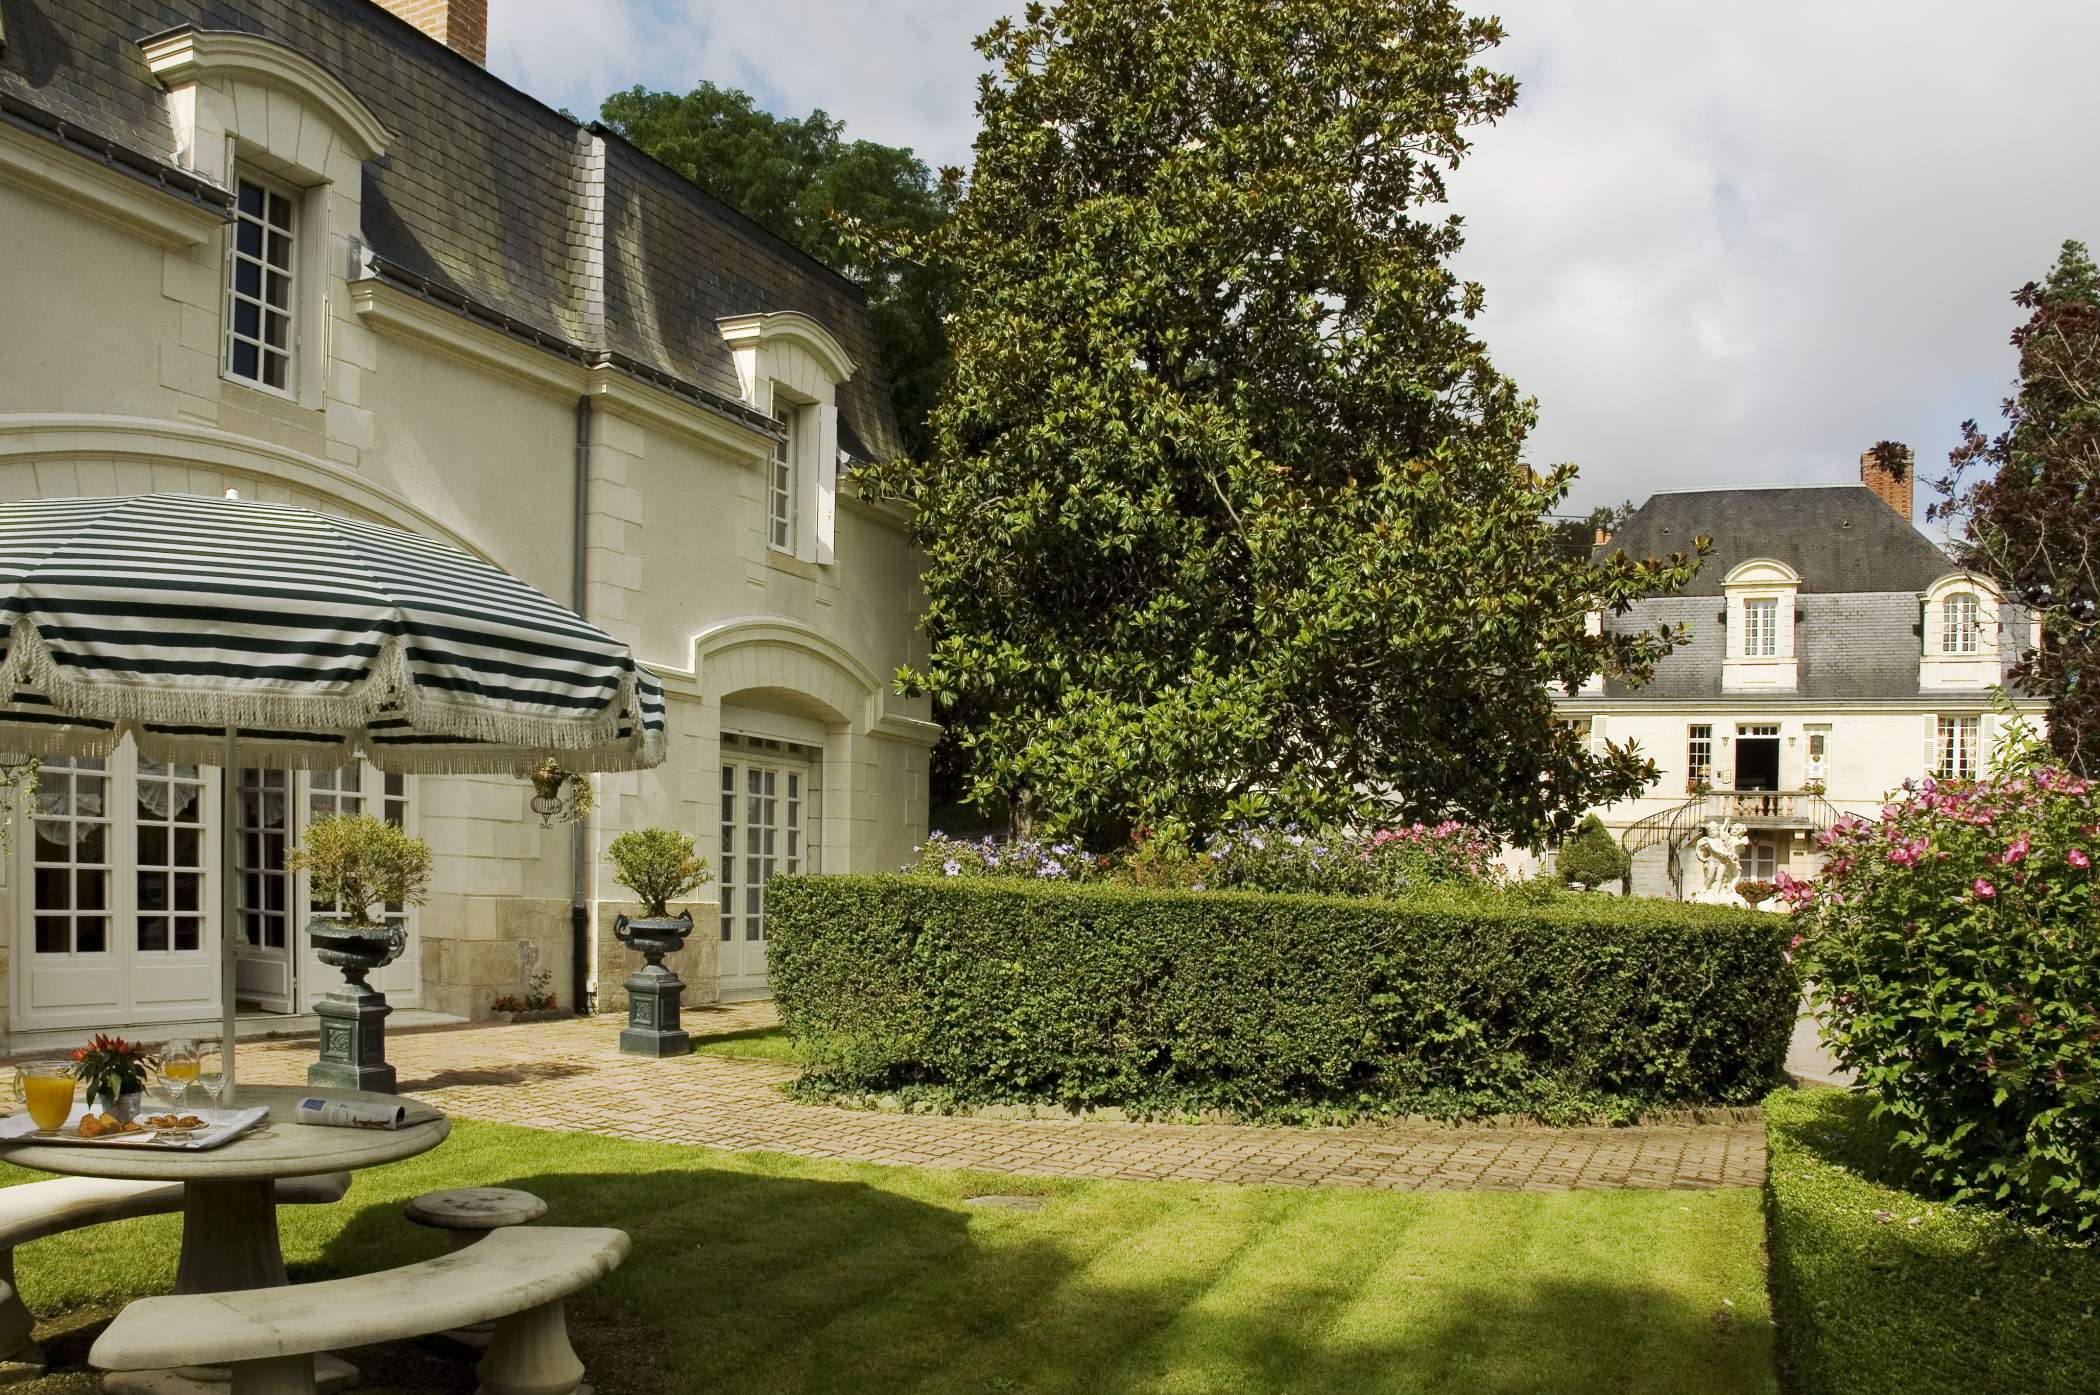 Garden of the Château de Beaulieu, Seminars near Tours